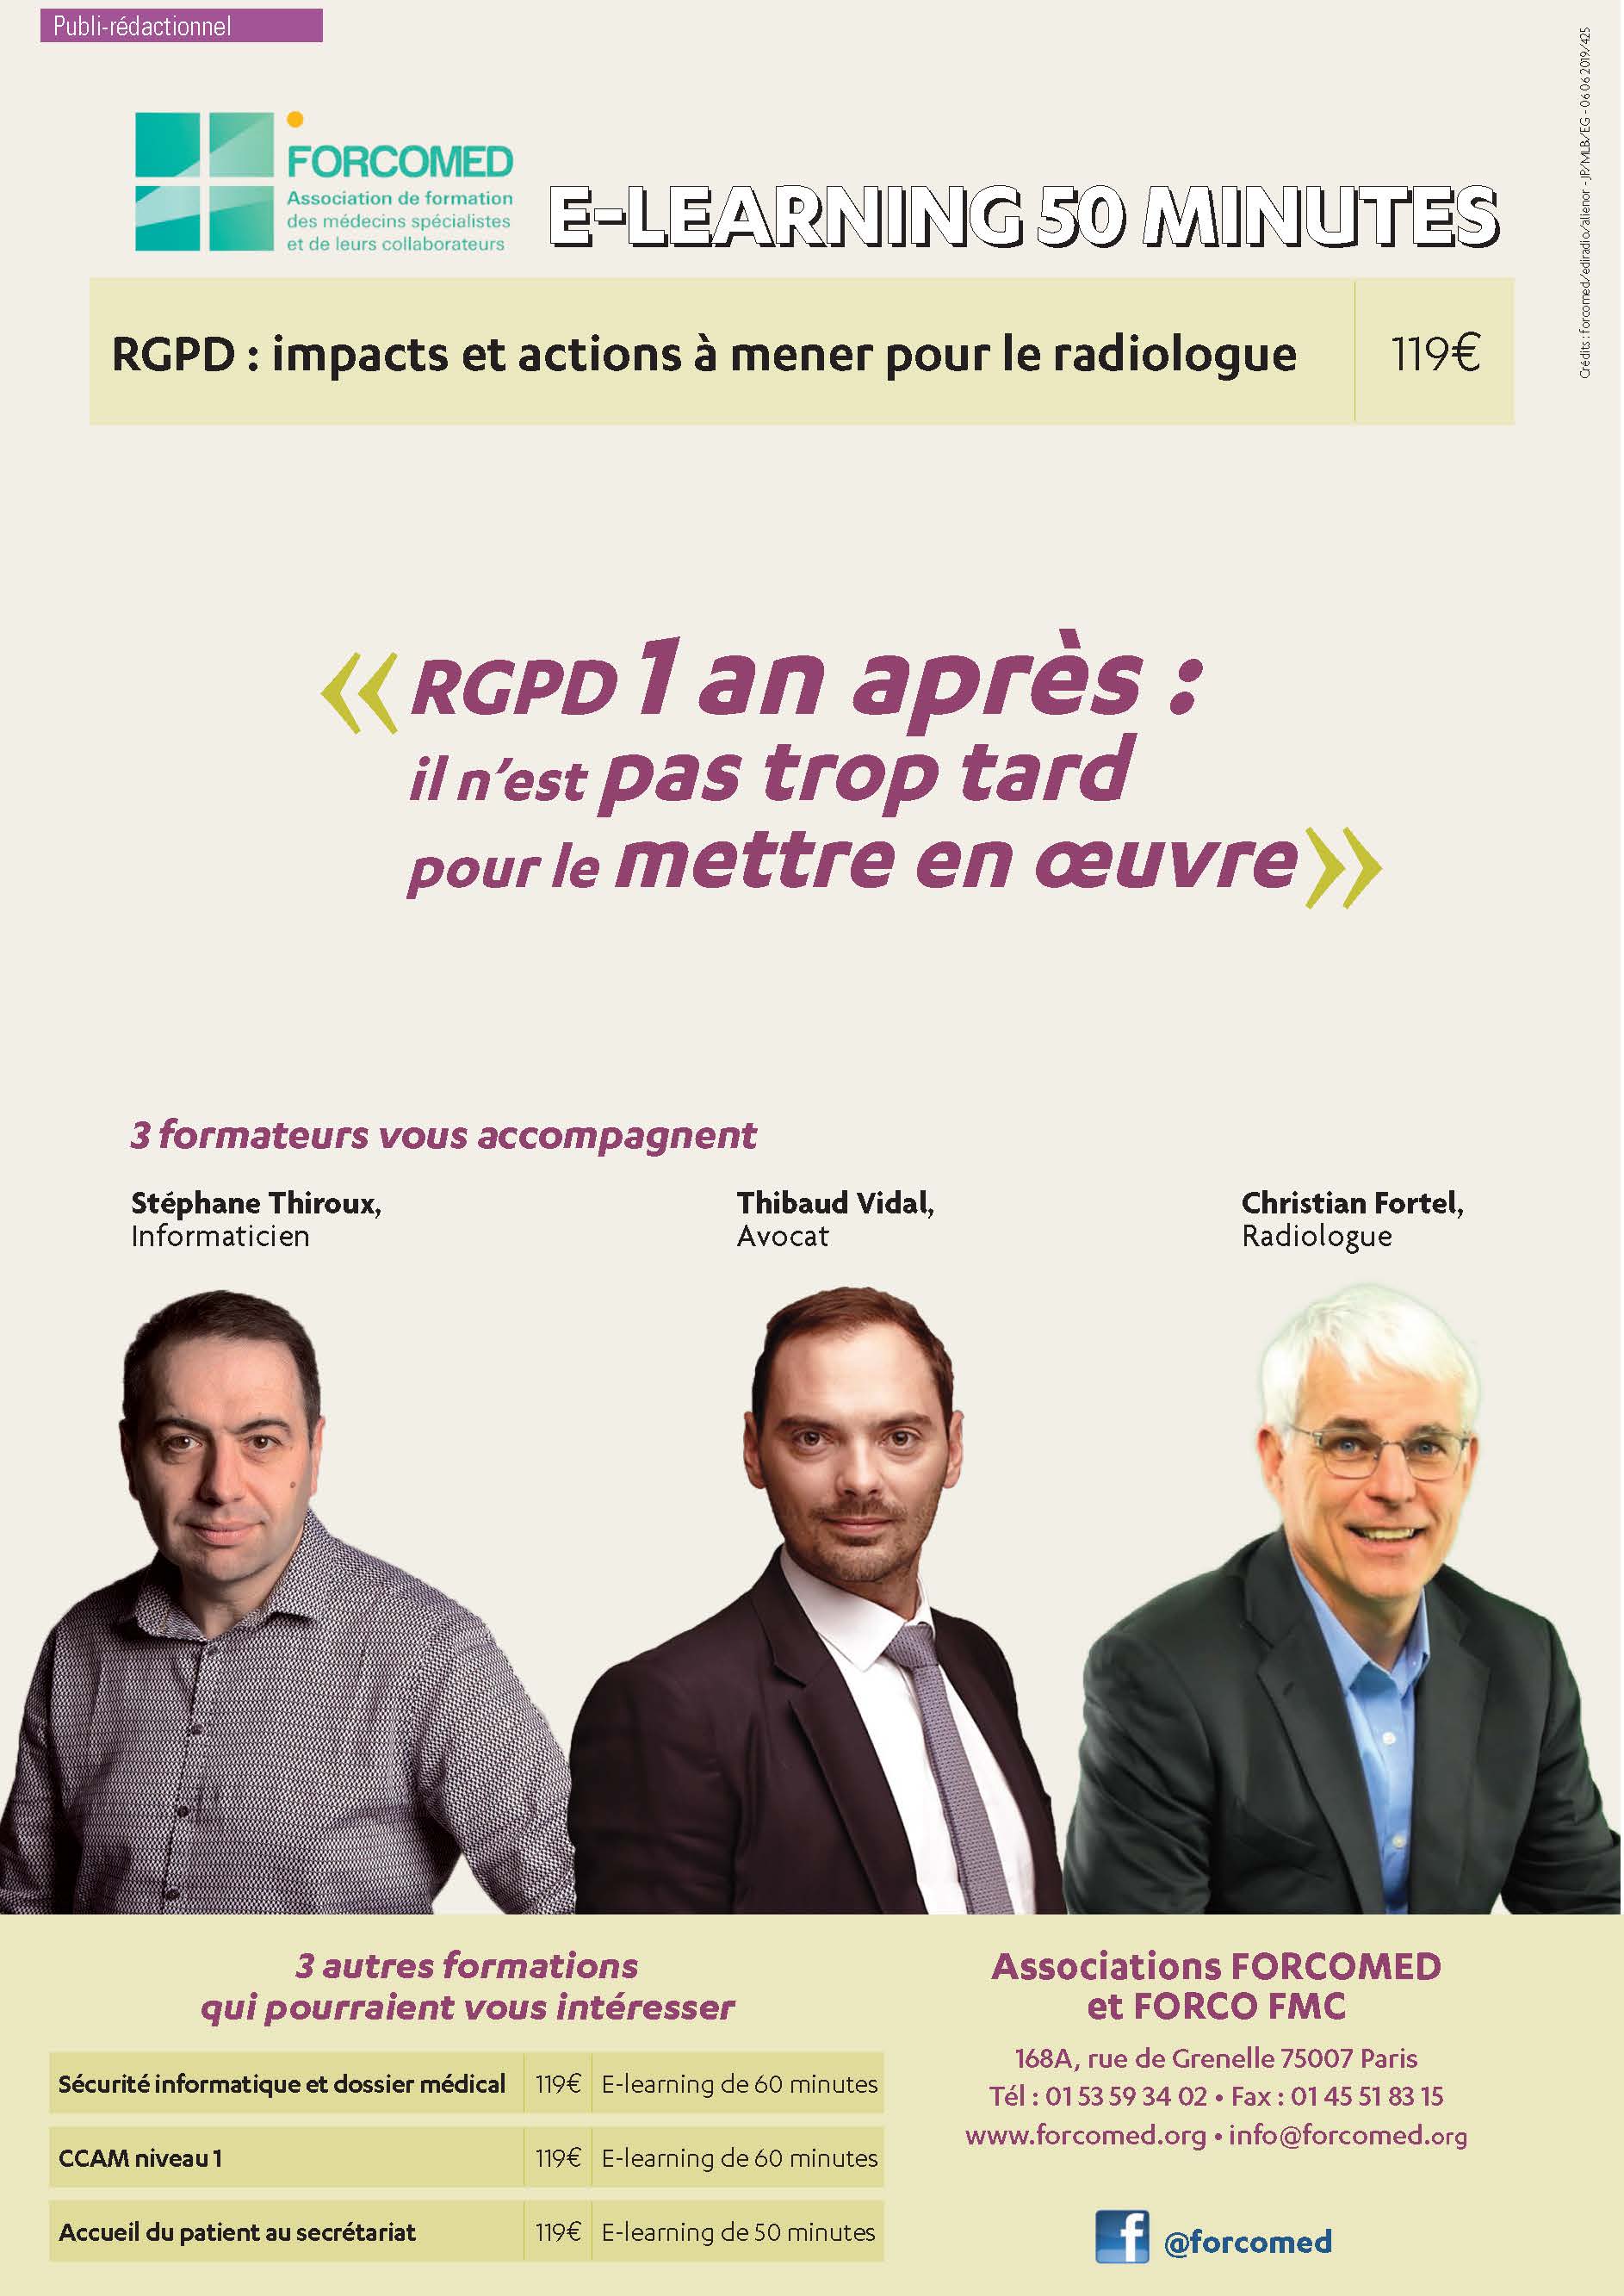 RGPD : IMPACTS ET ACTIONS pour le Radiologue